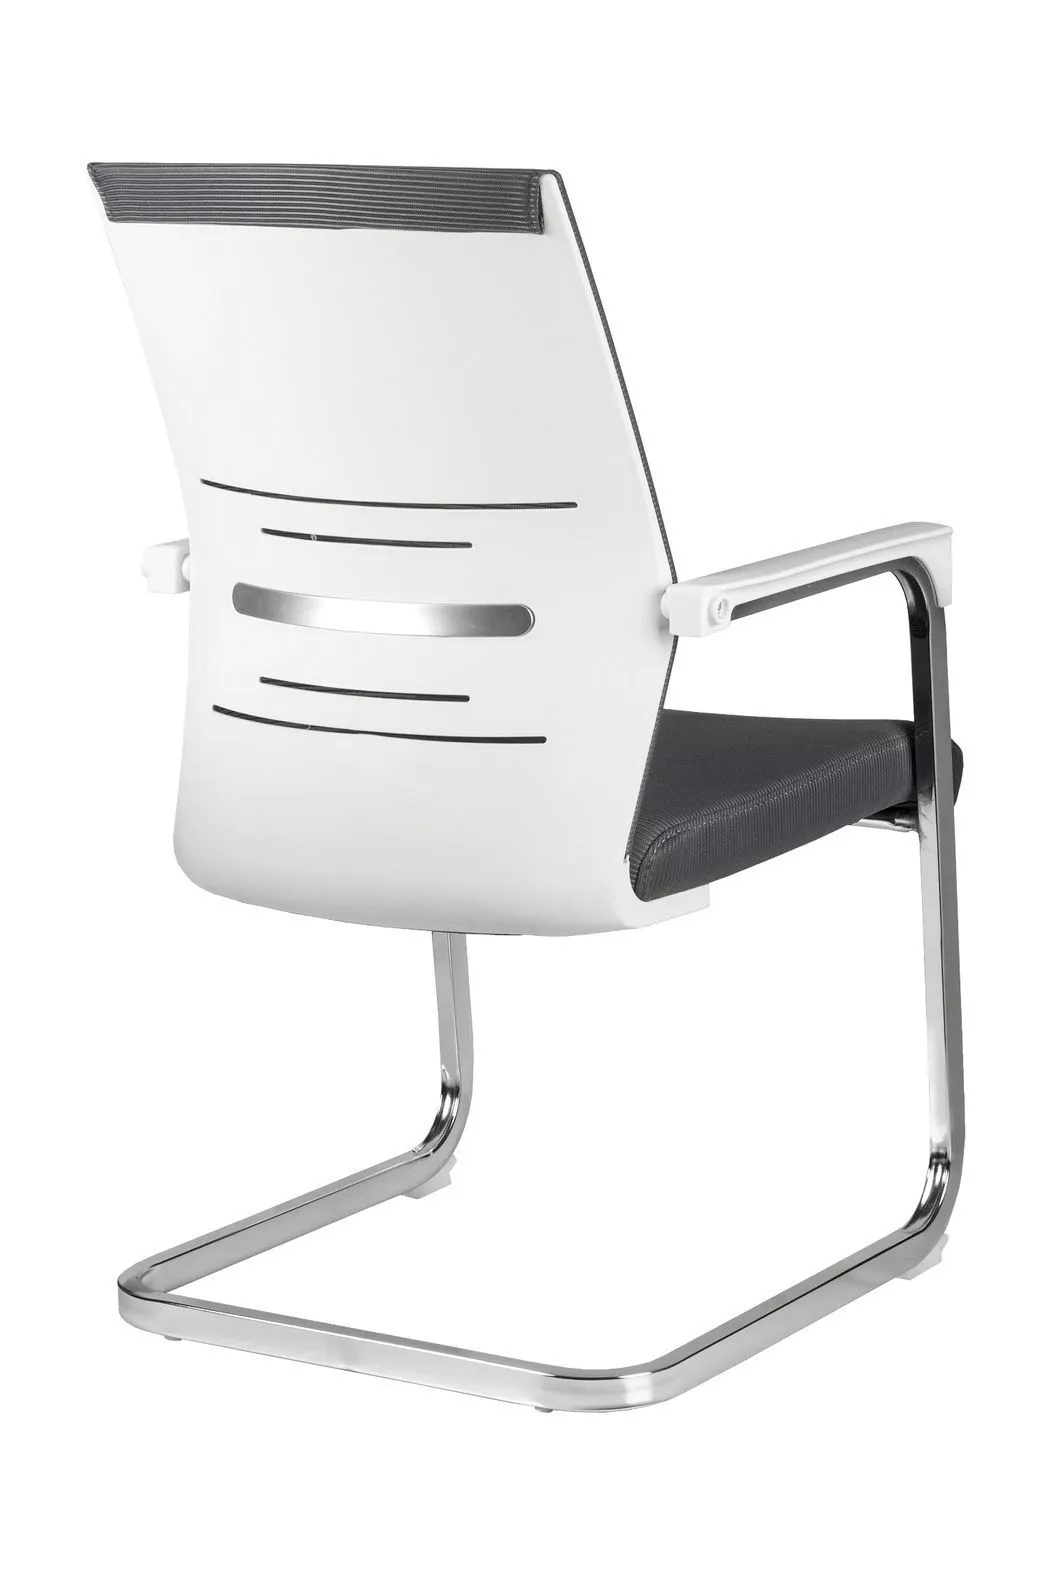 Конференц кресло Riva Chair Like D819 белый пластик / серый